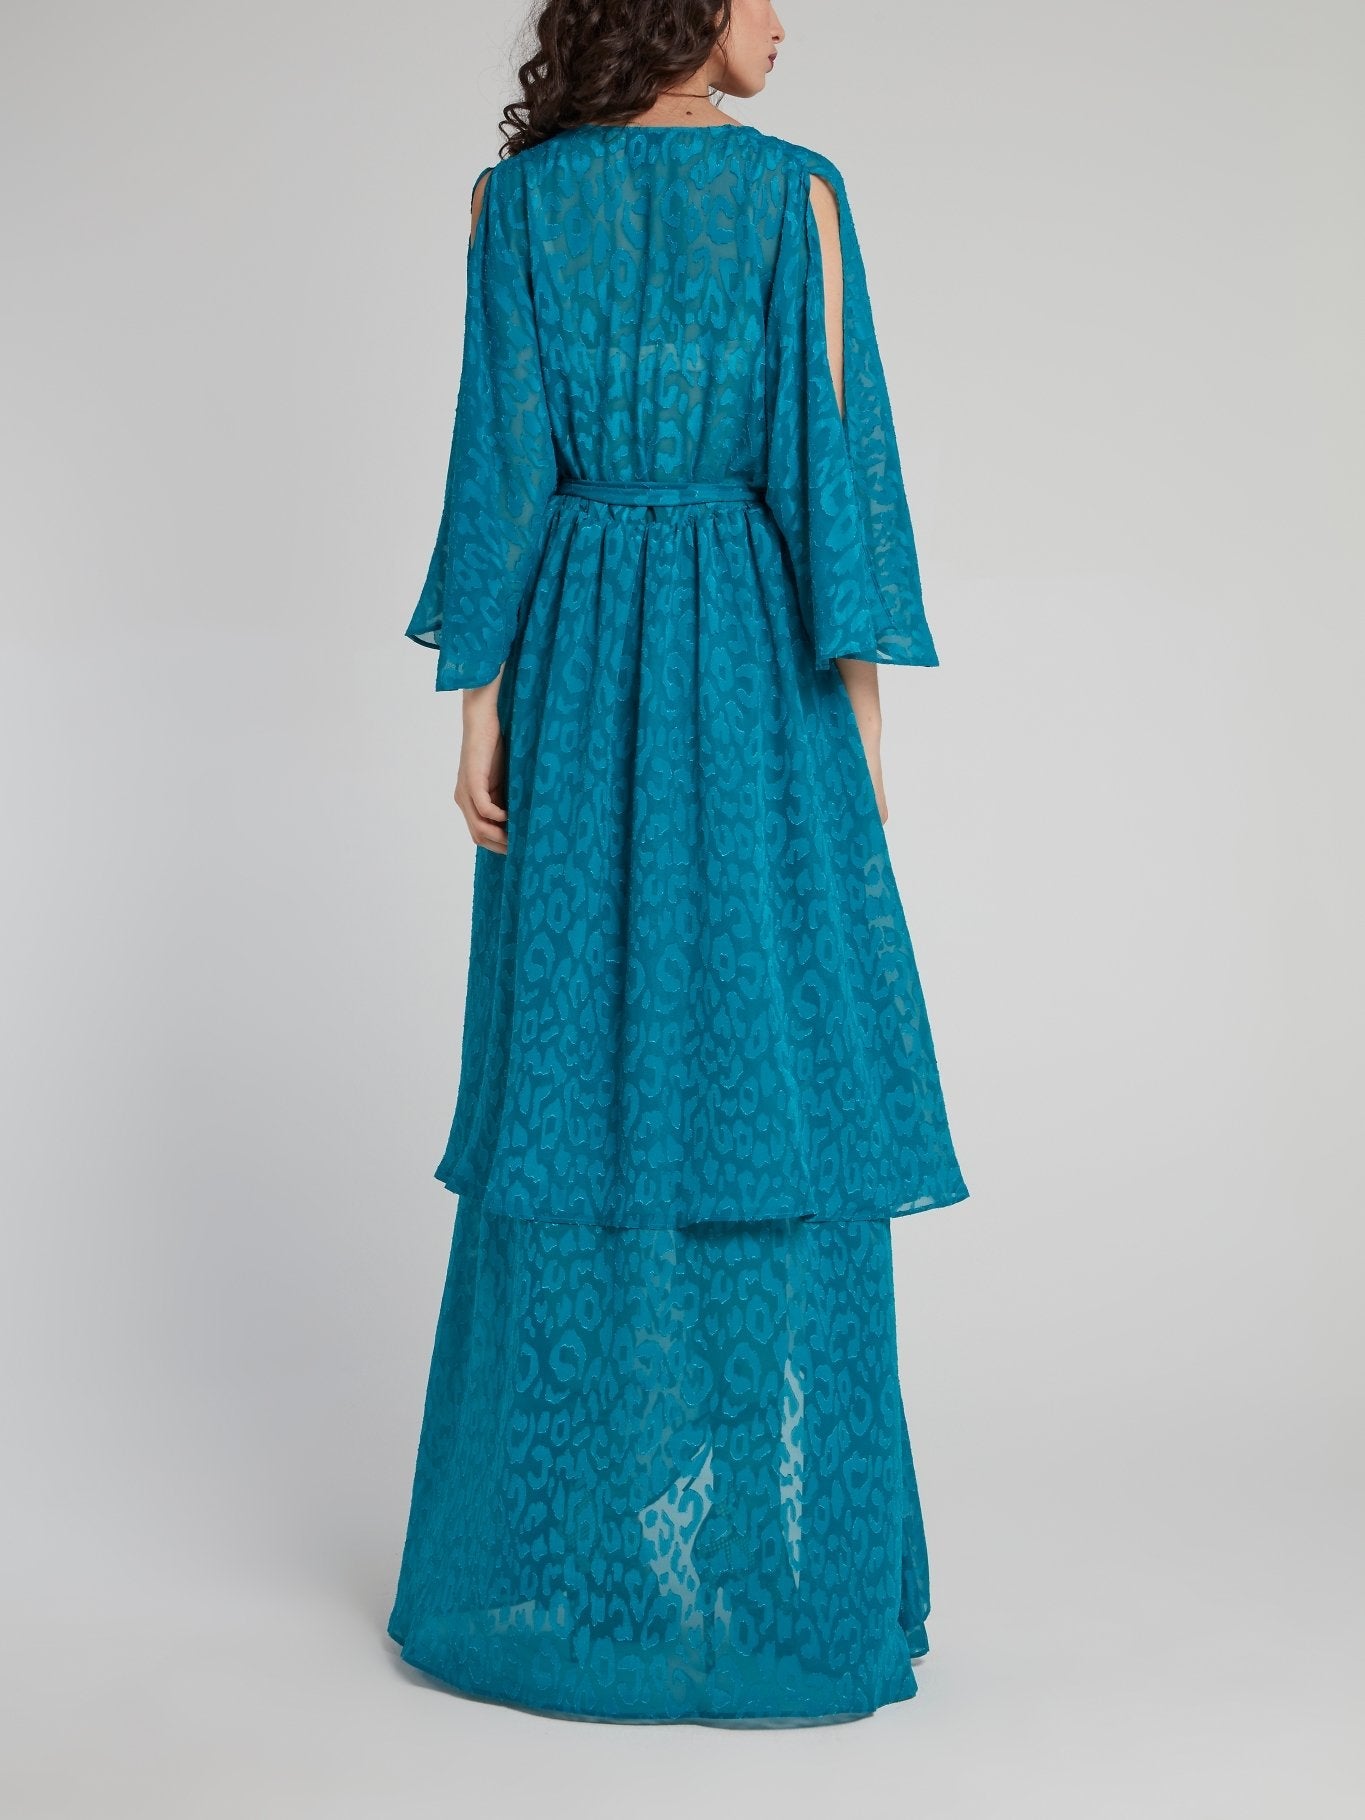 Blue Leopard Print High-Low Maxi Dress